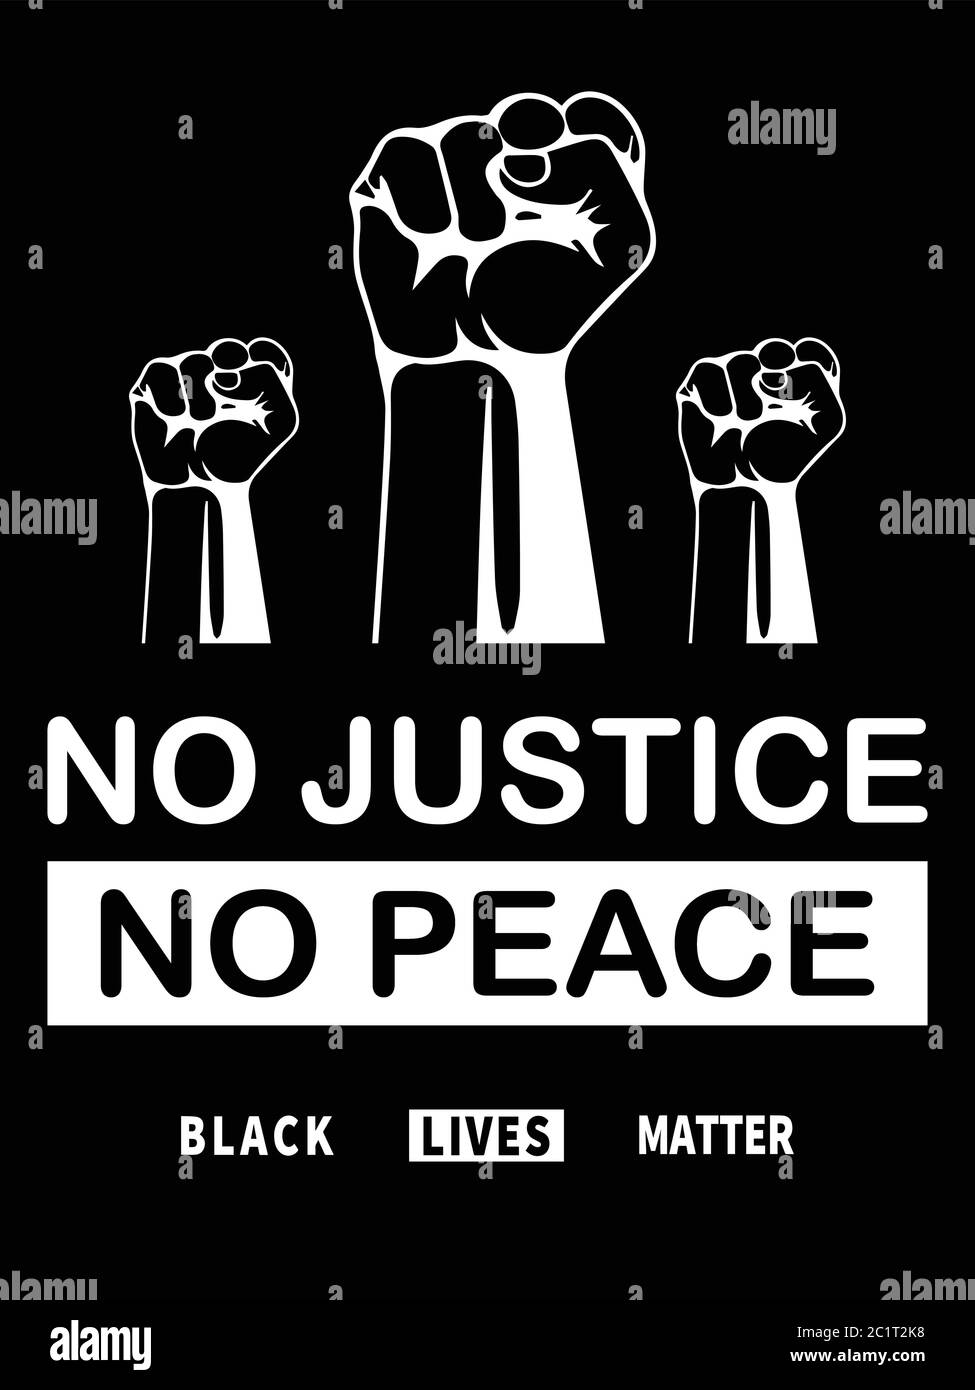 Schwarze Leben Sind Wichtig. Schwarz-weiß BLM-Illustration mit drei Fäusten, die No Justice No Peace zeigt. EPS-Vektor Stock Vektor